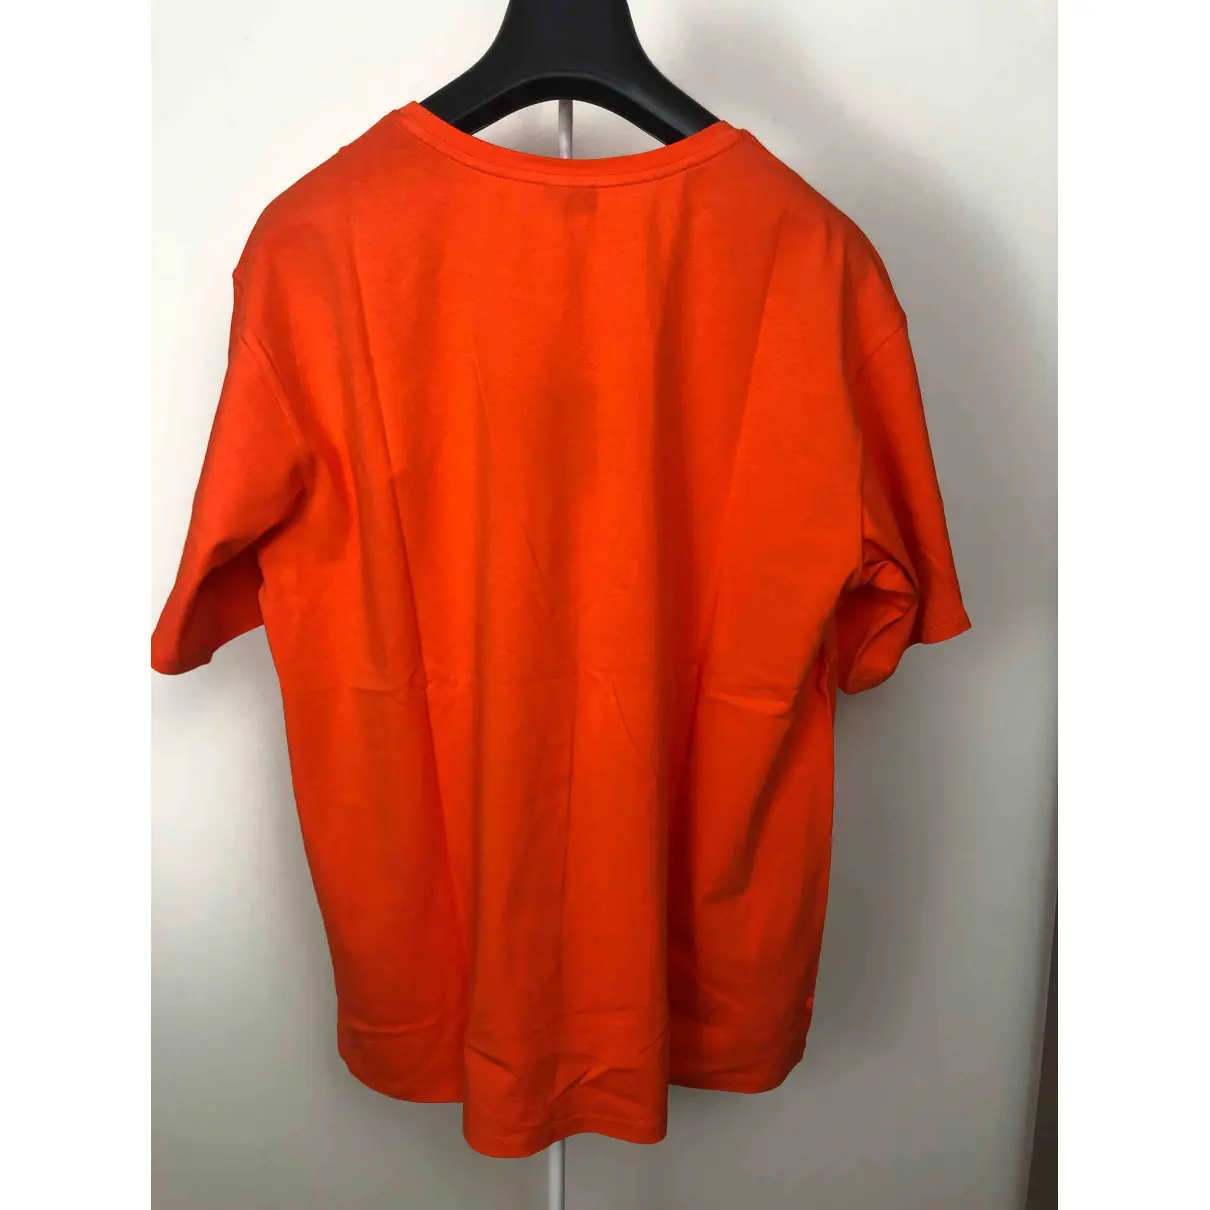 Buy Marella Orange Cotton Top online